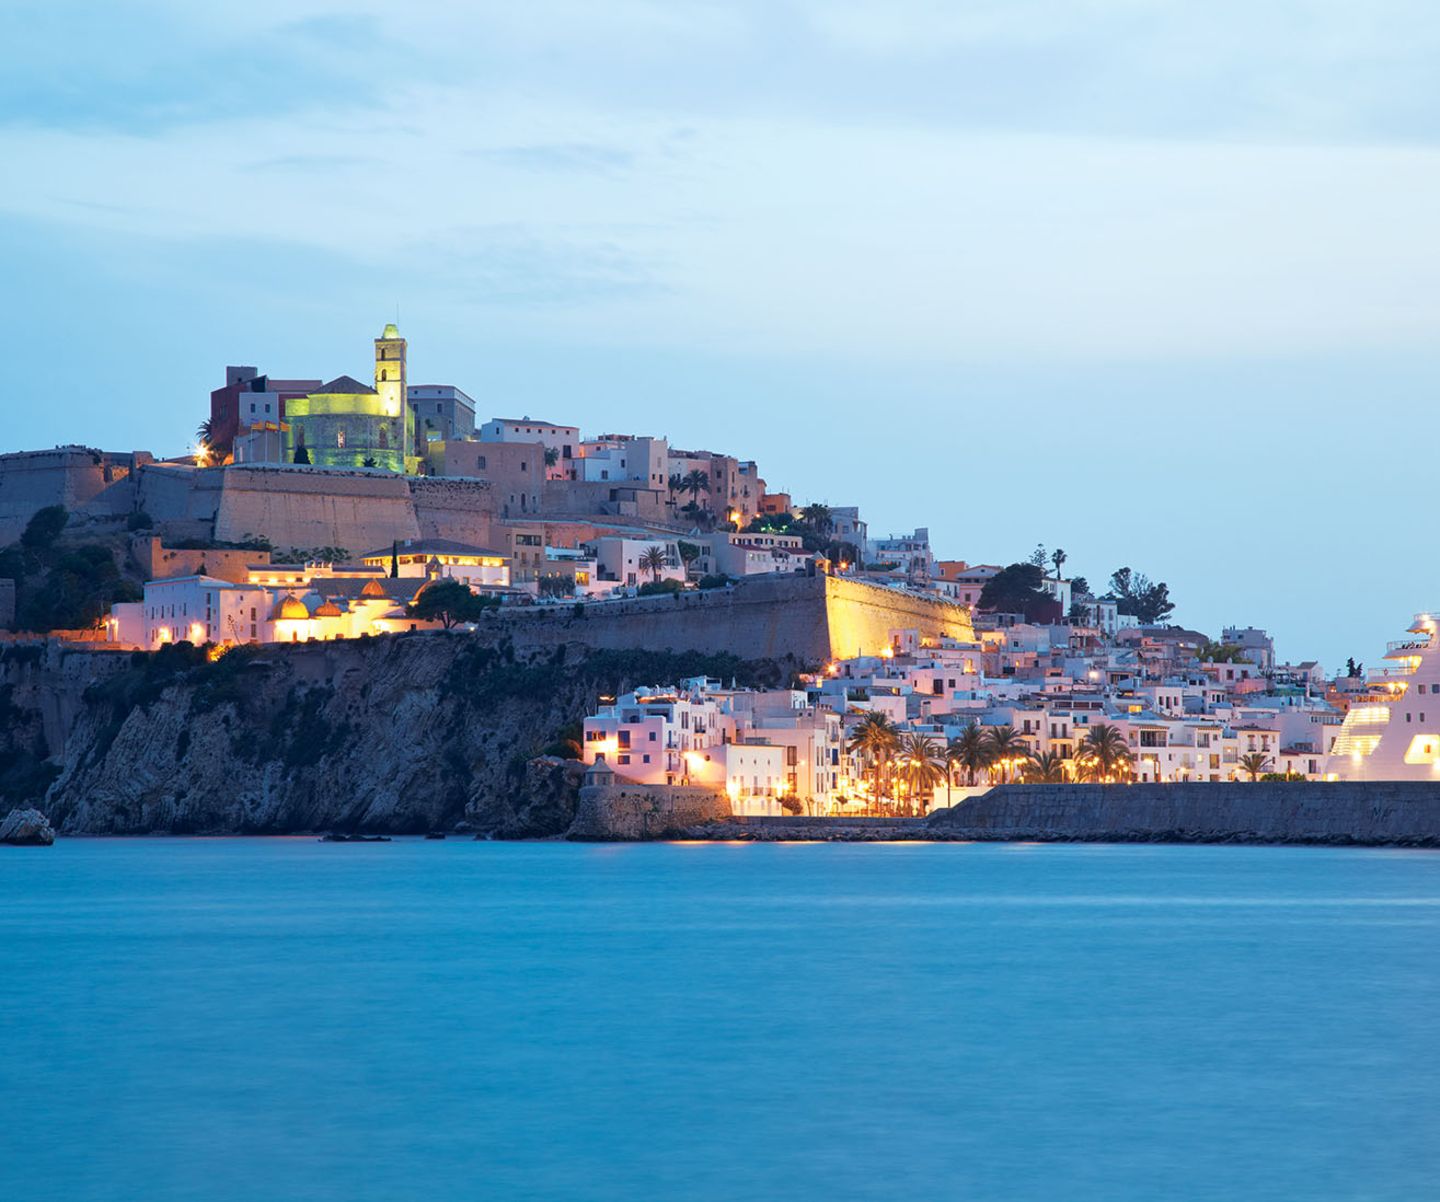 Fort, Wehrmauer und gestapelte Häuschen: Die "Dalt Vila", die Altstadt Eivissas, liegt wie eine Festung über dem Meer.